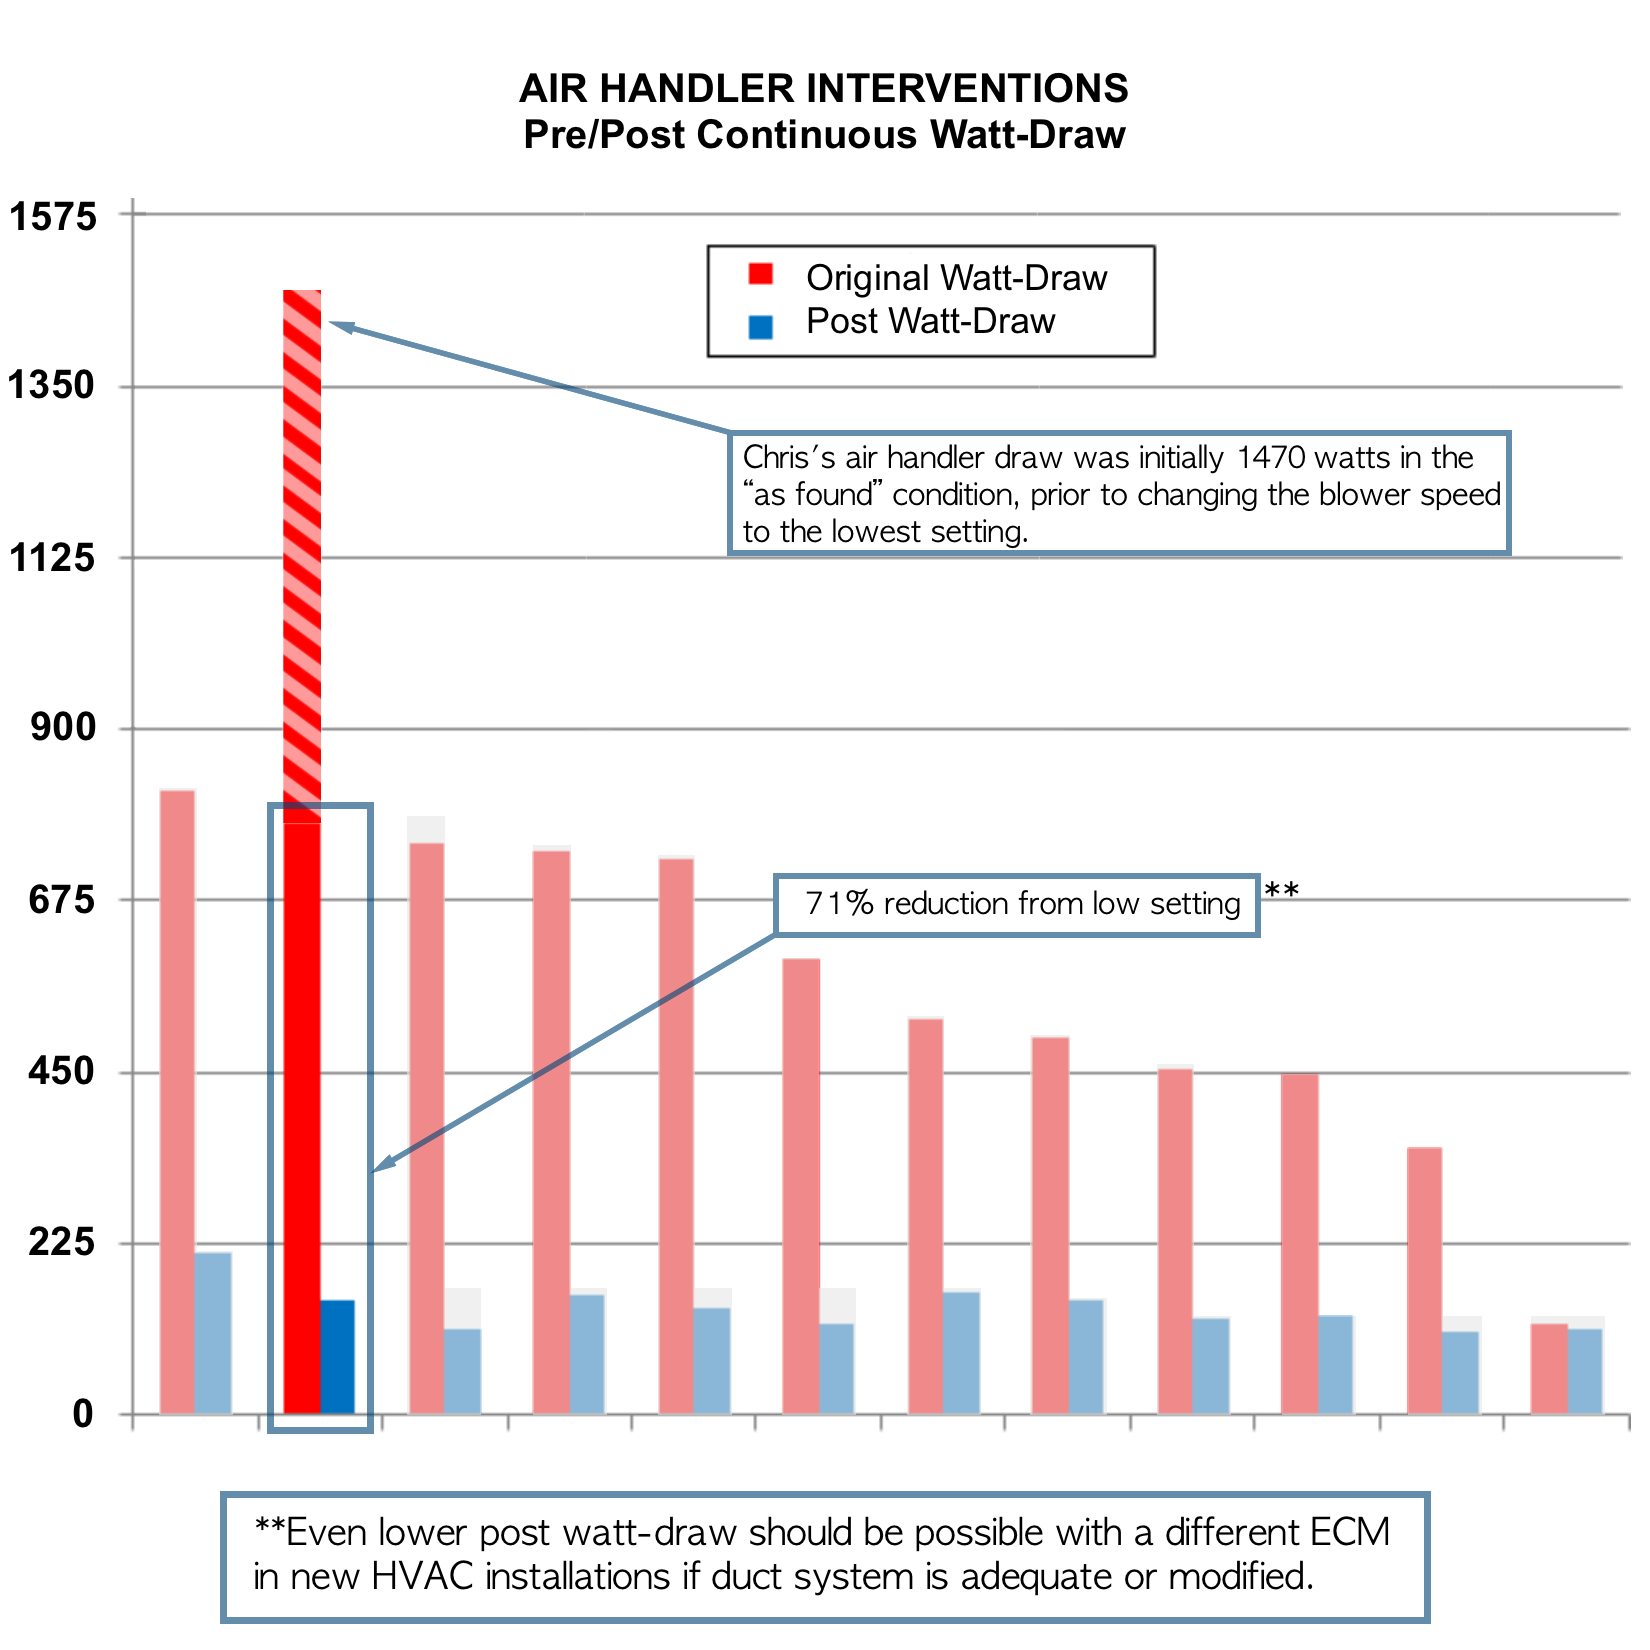 Air Handler Interventions chart